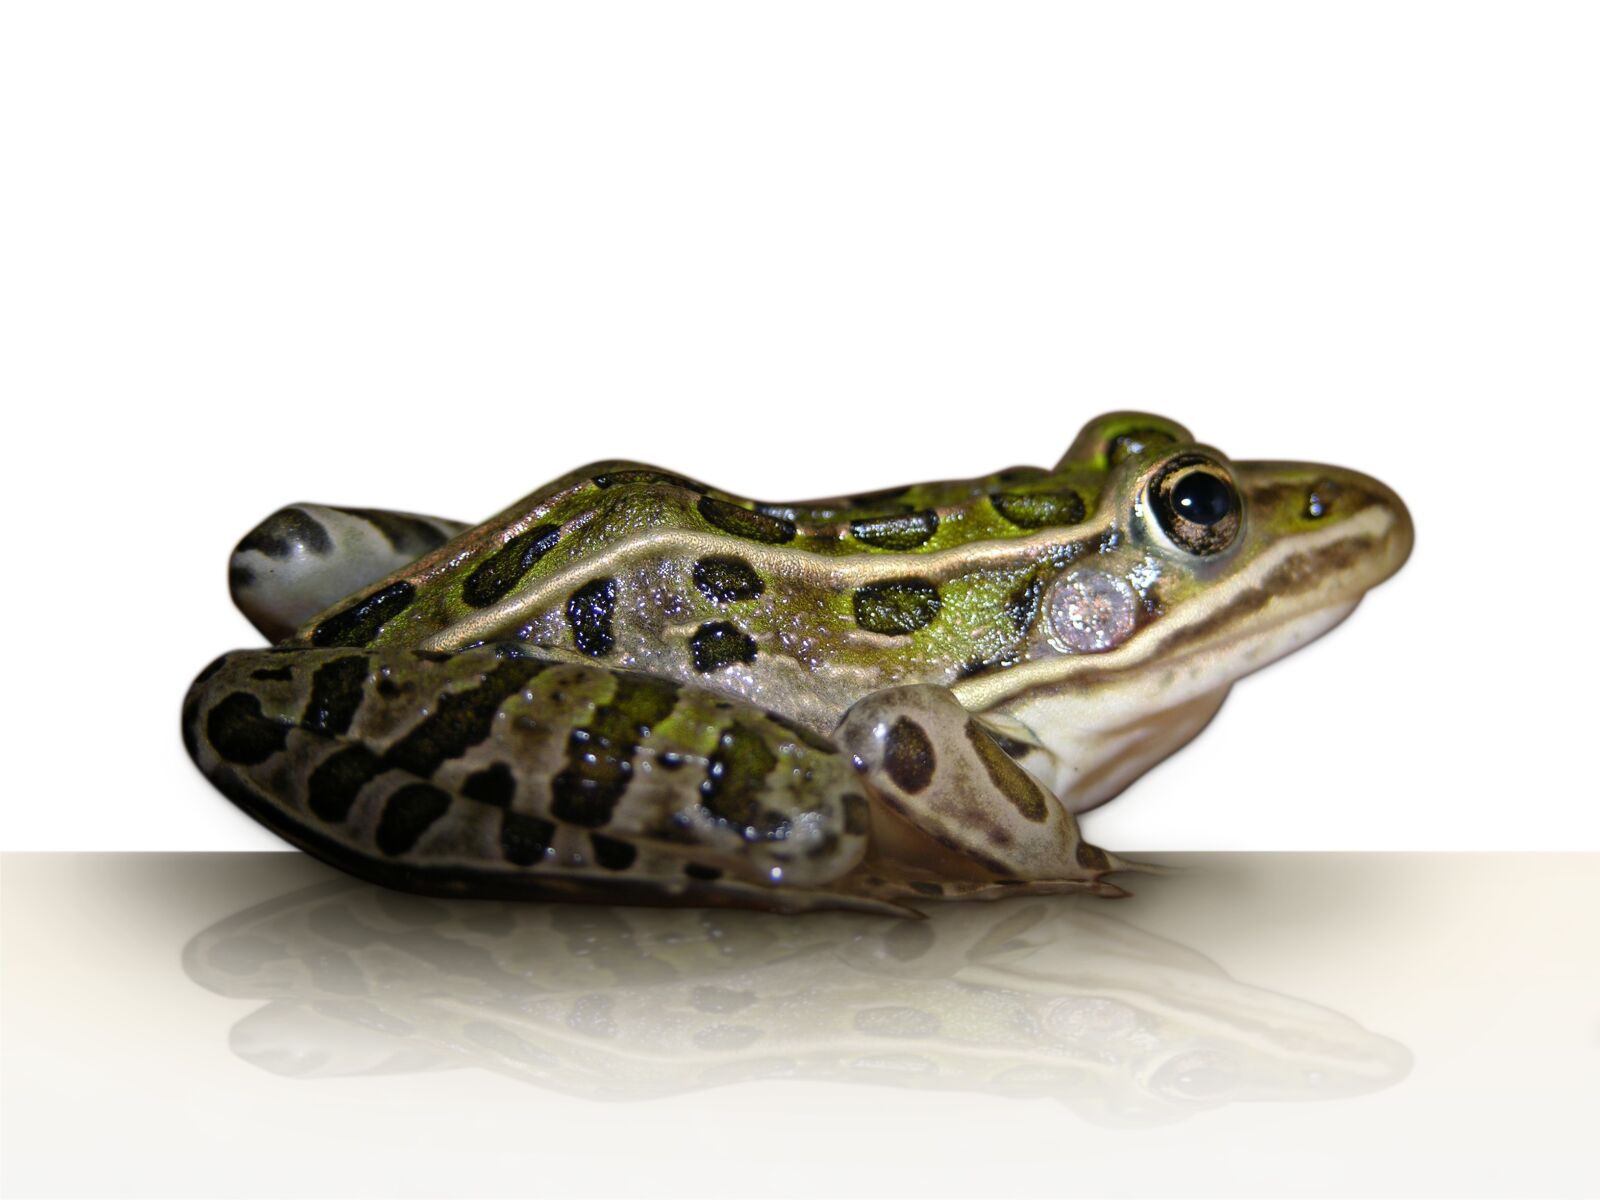 Nikon E8700 sample photo. Frog, leopard frog, amphibian photography